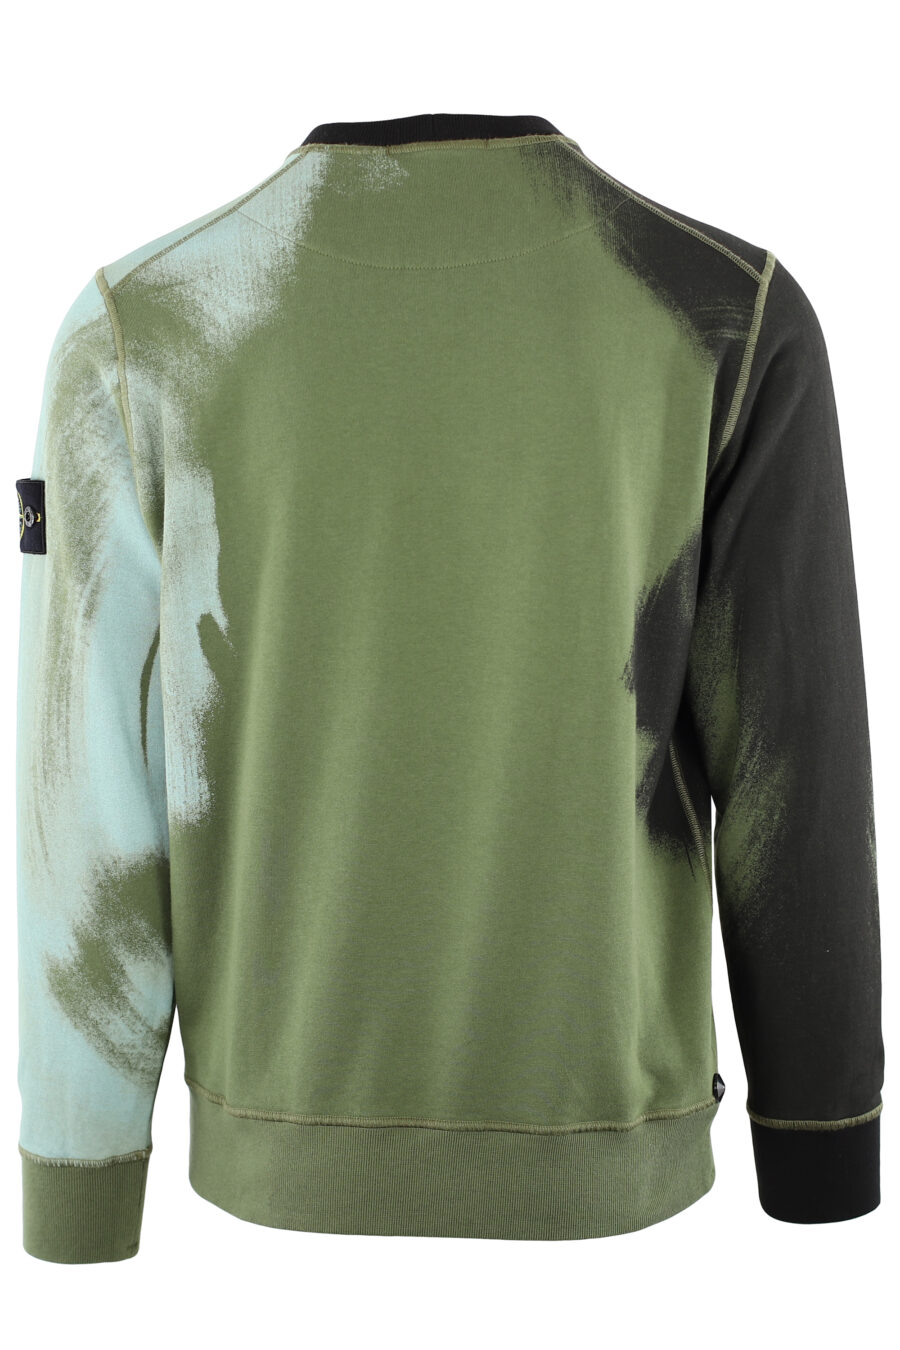 Militärgrünes Sweatshirt mit blauem und schwarzem verzerrtem Aufdruck - IMG 7454